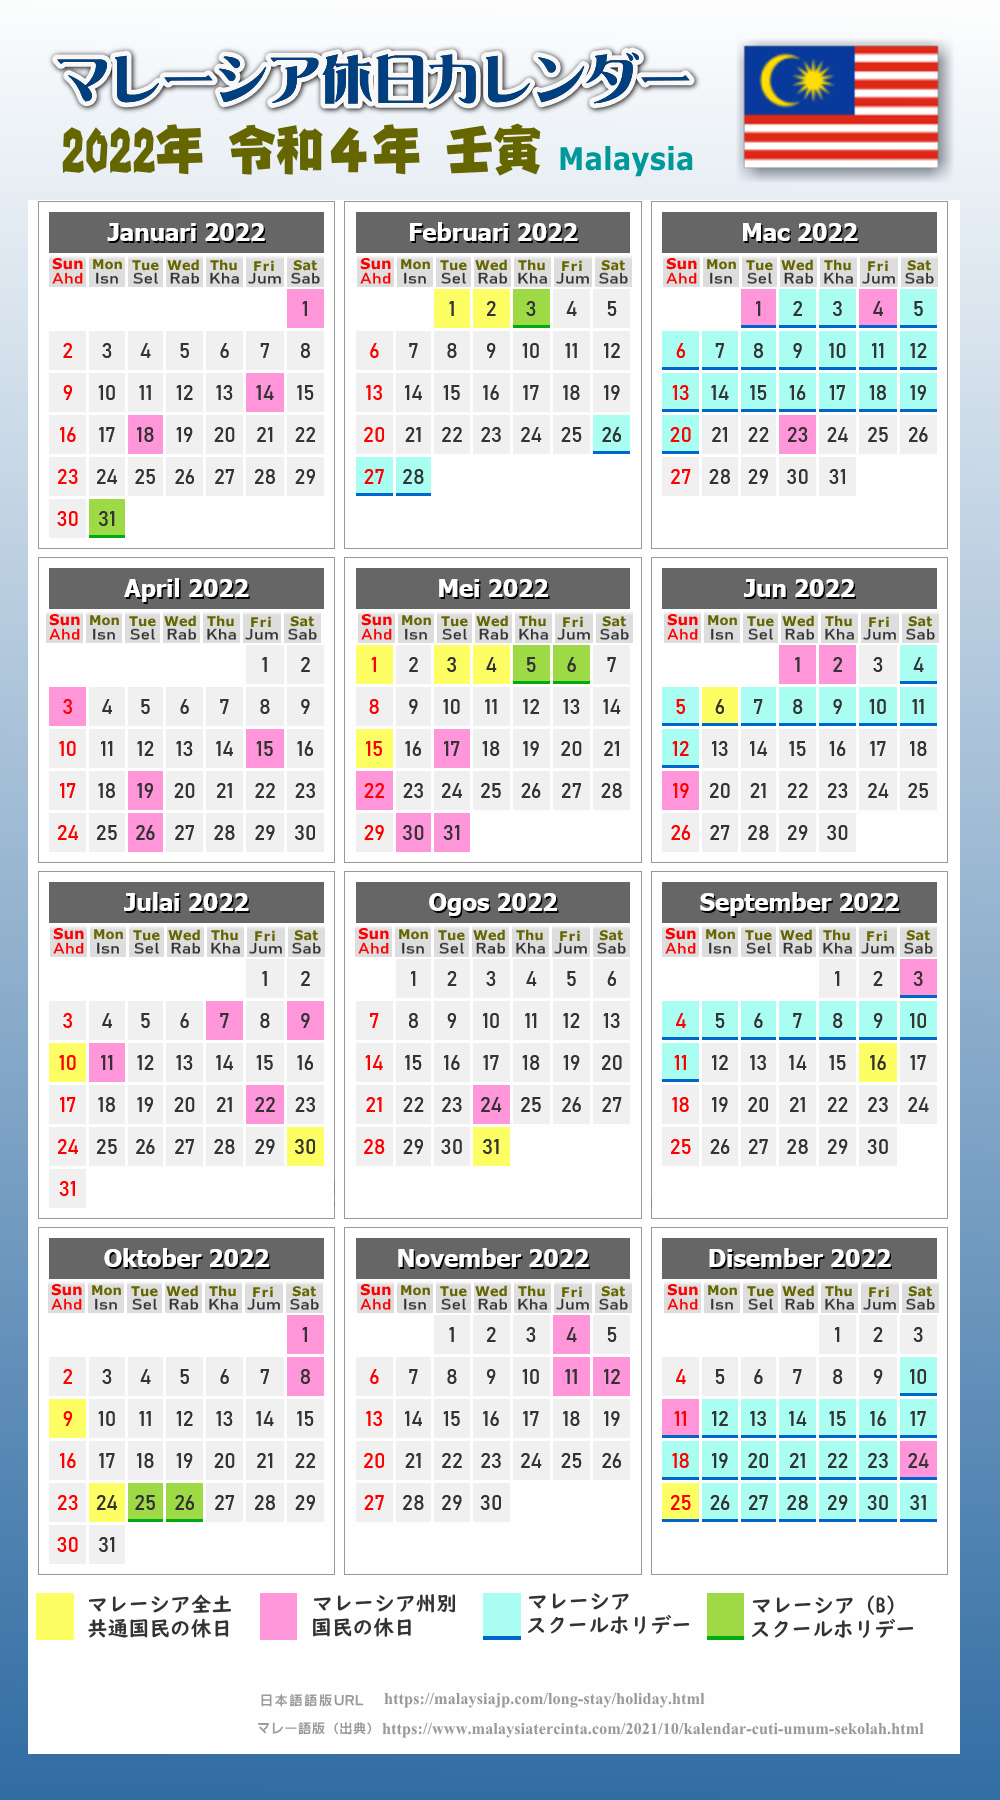 マレーシアの休日カレンダー2022年版（令和4年）